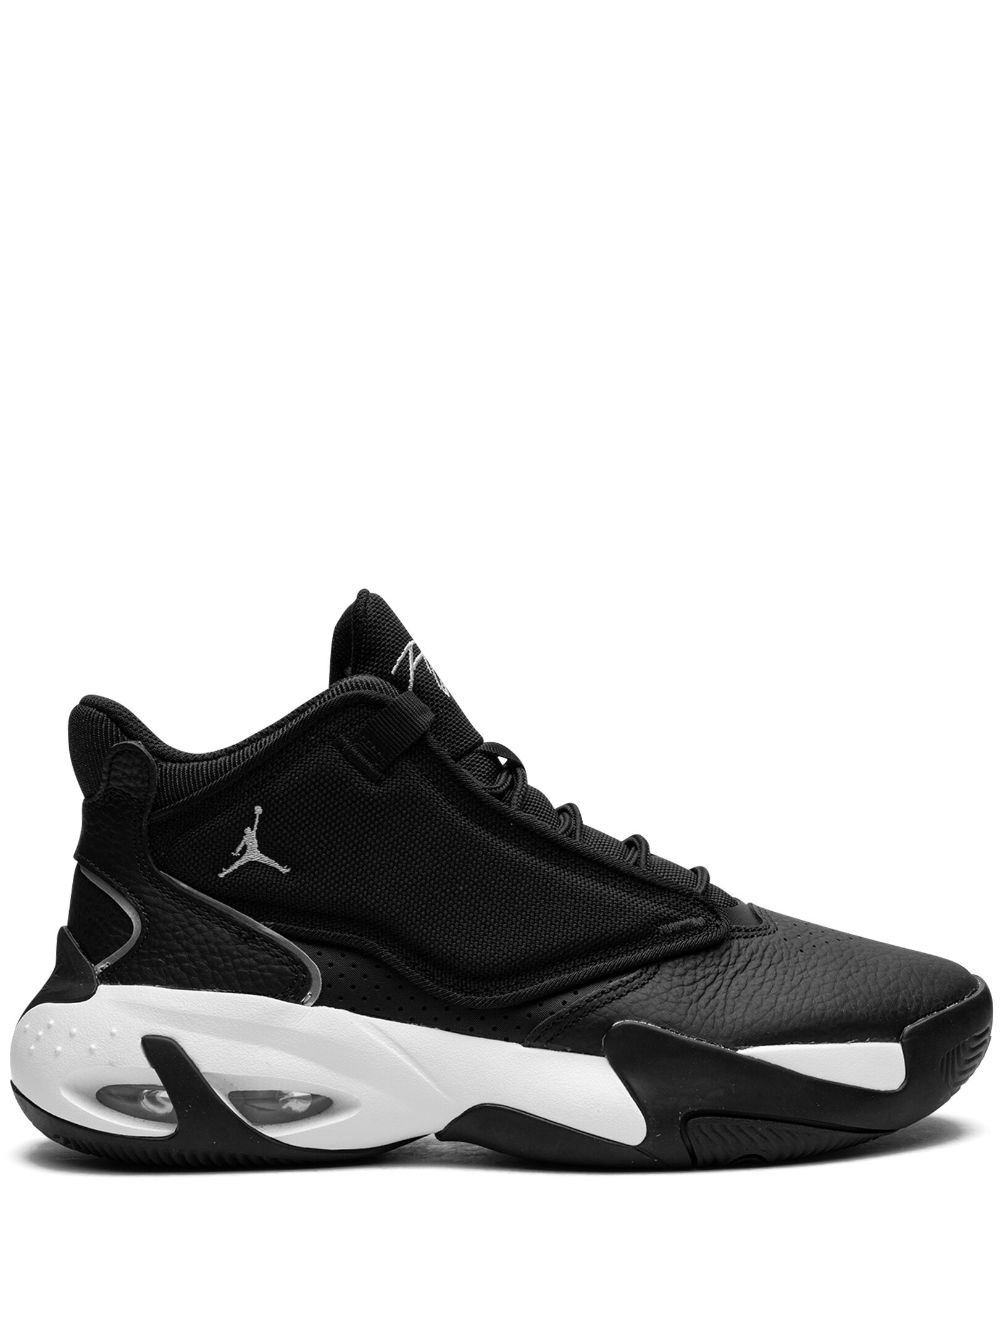 Jordan Jordan Max Aura 4 sneakers - Black